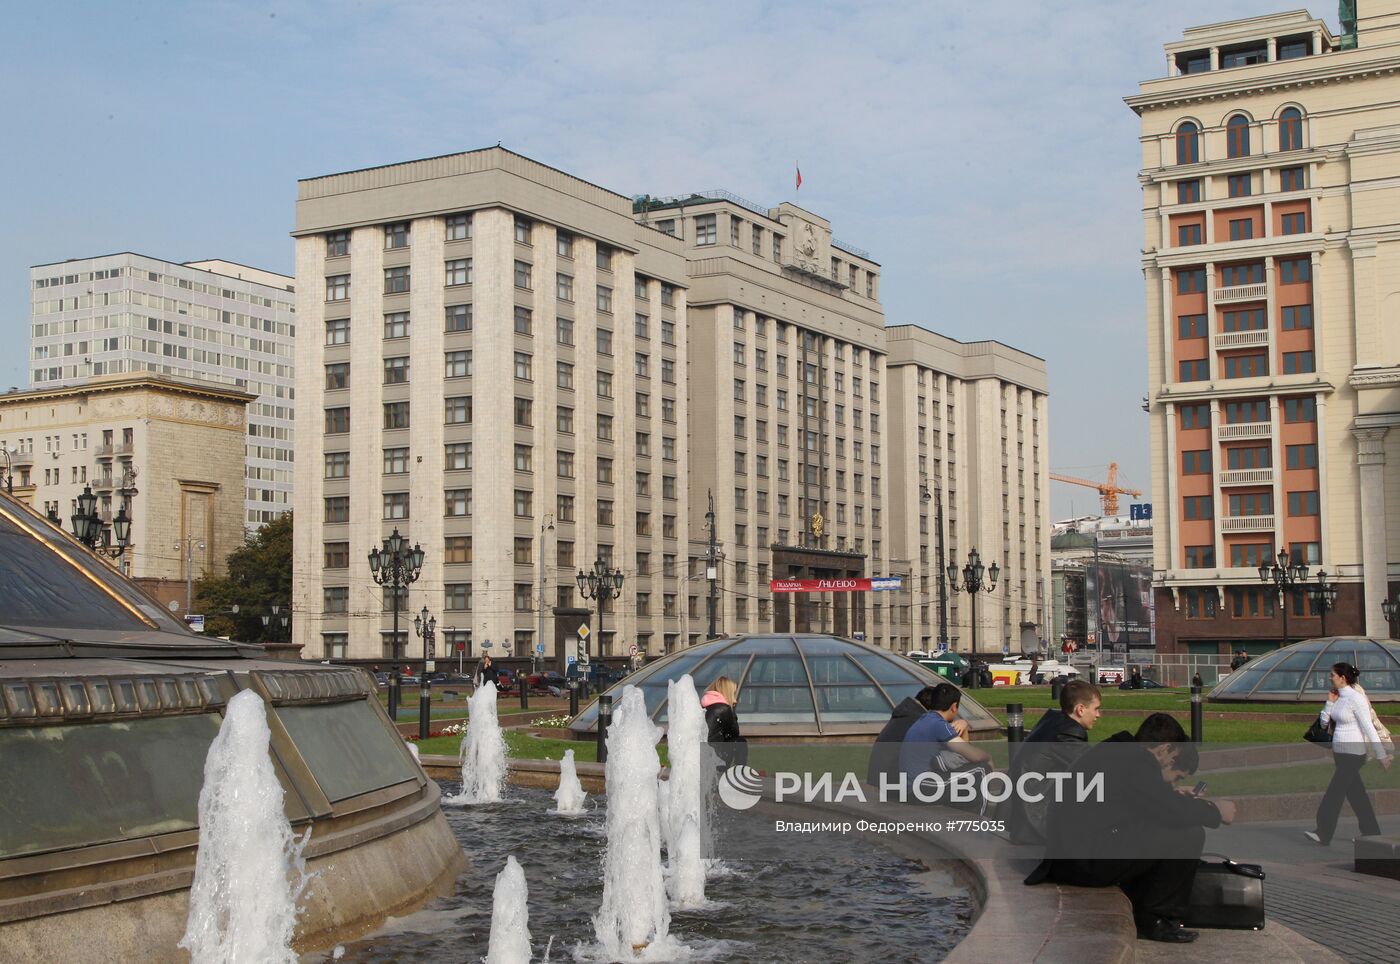 Вид на здание Государственной Думы РФ